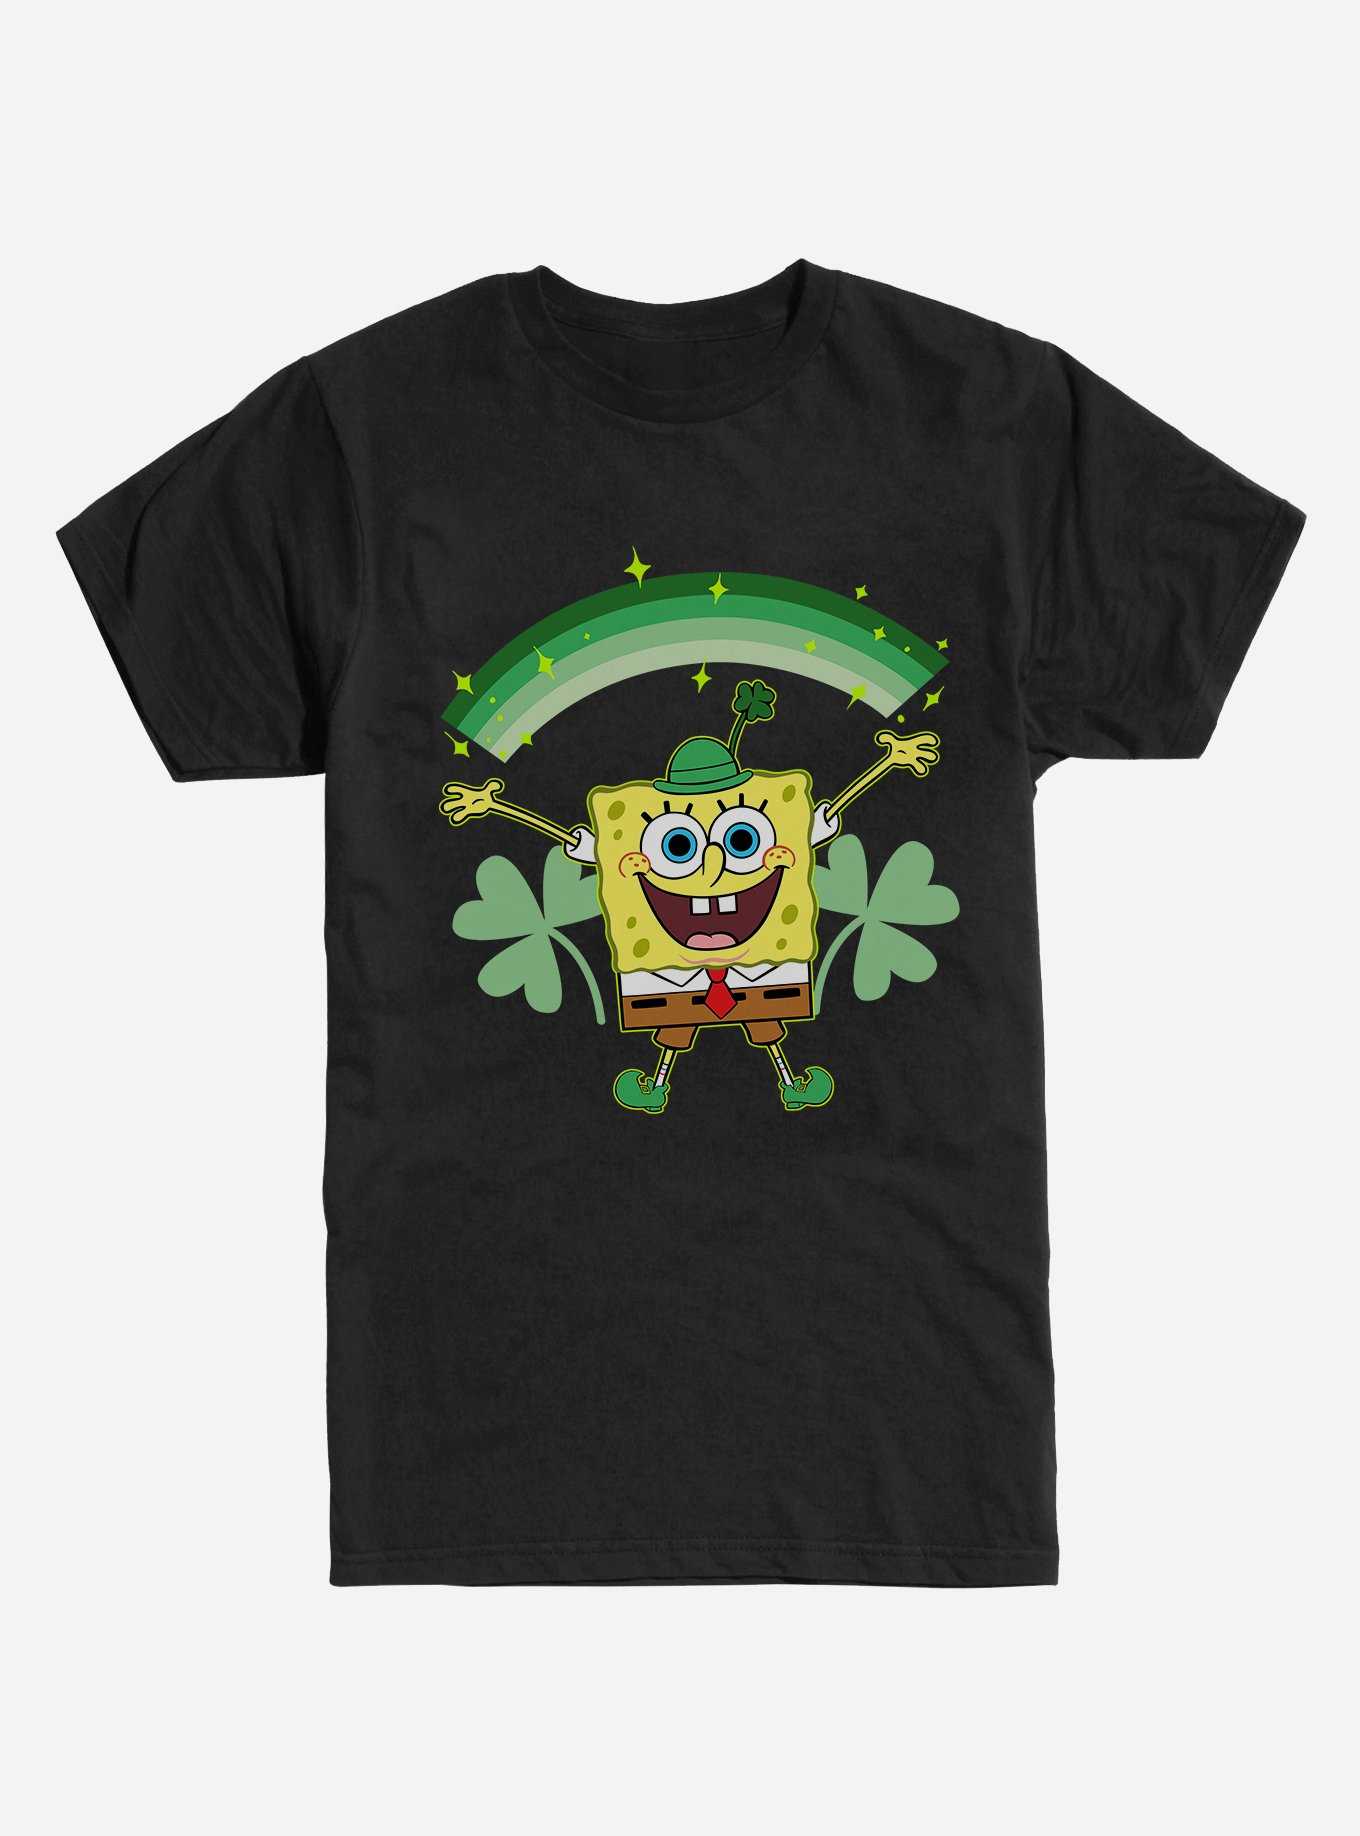 SpongeBob SquarePants St. Patrick's Day Shamrocks Black T-Shirt, , hi-res